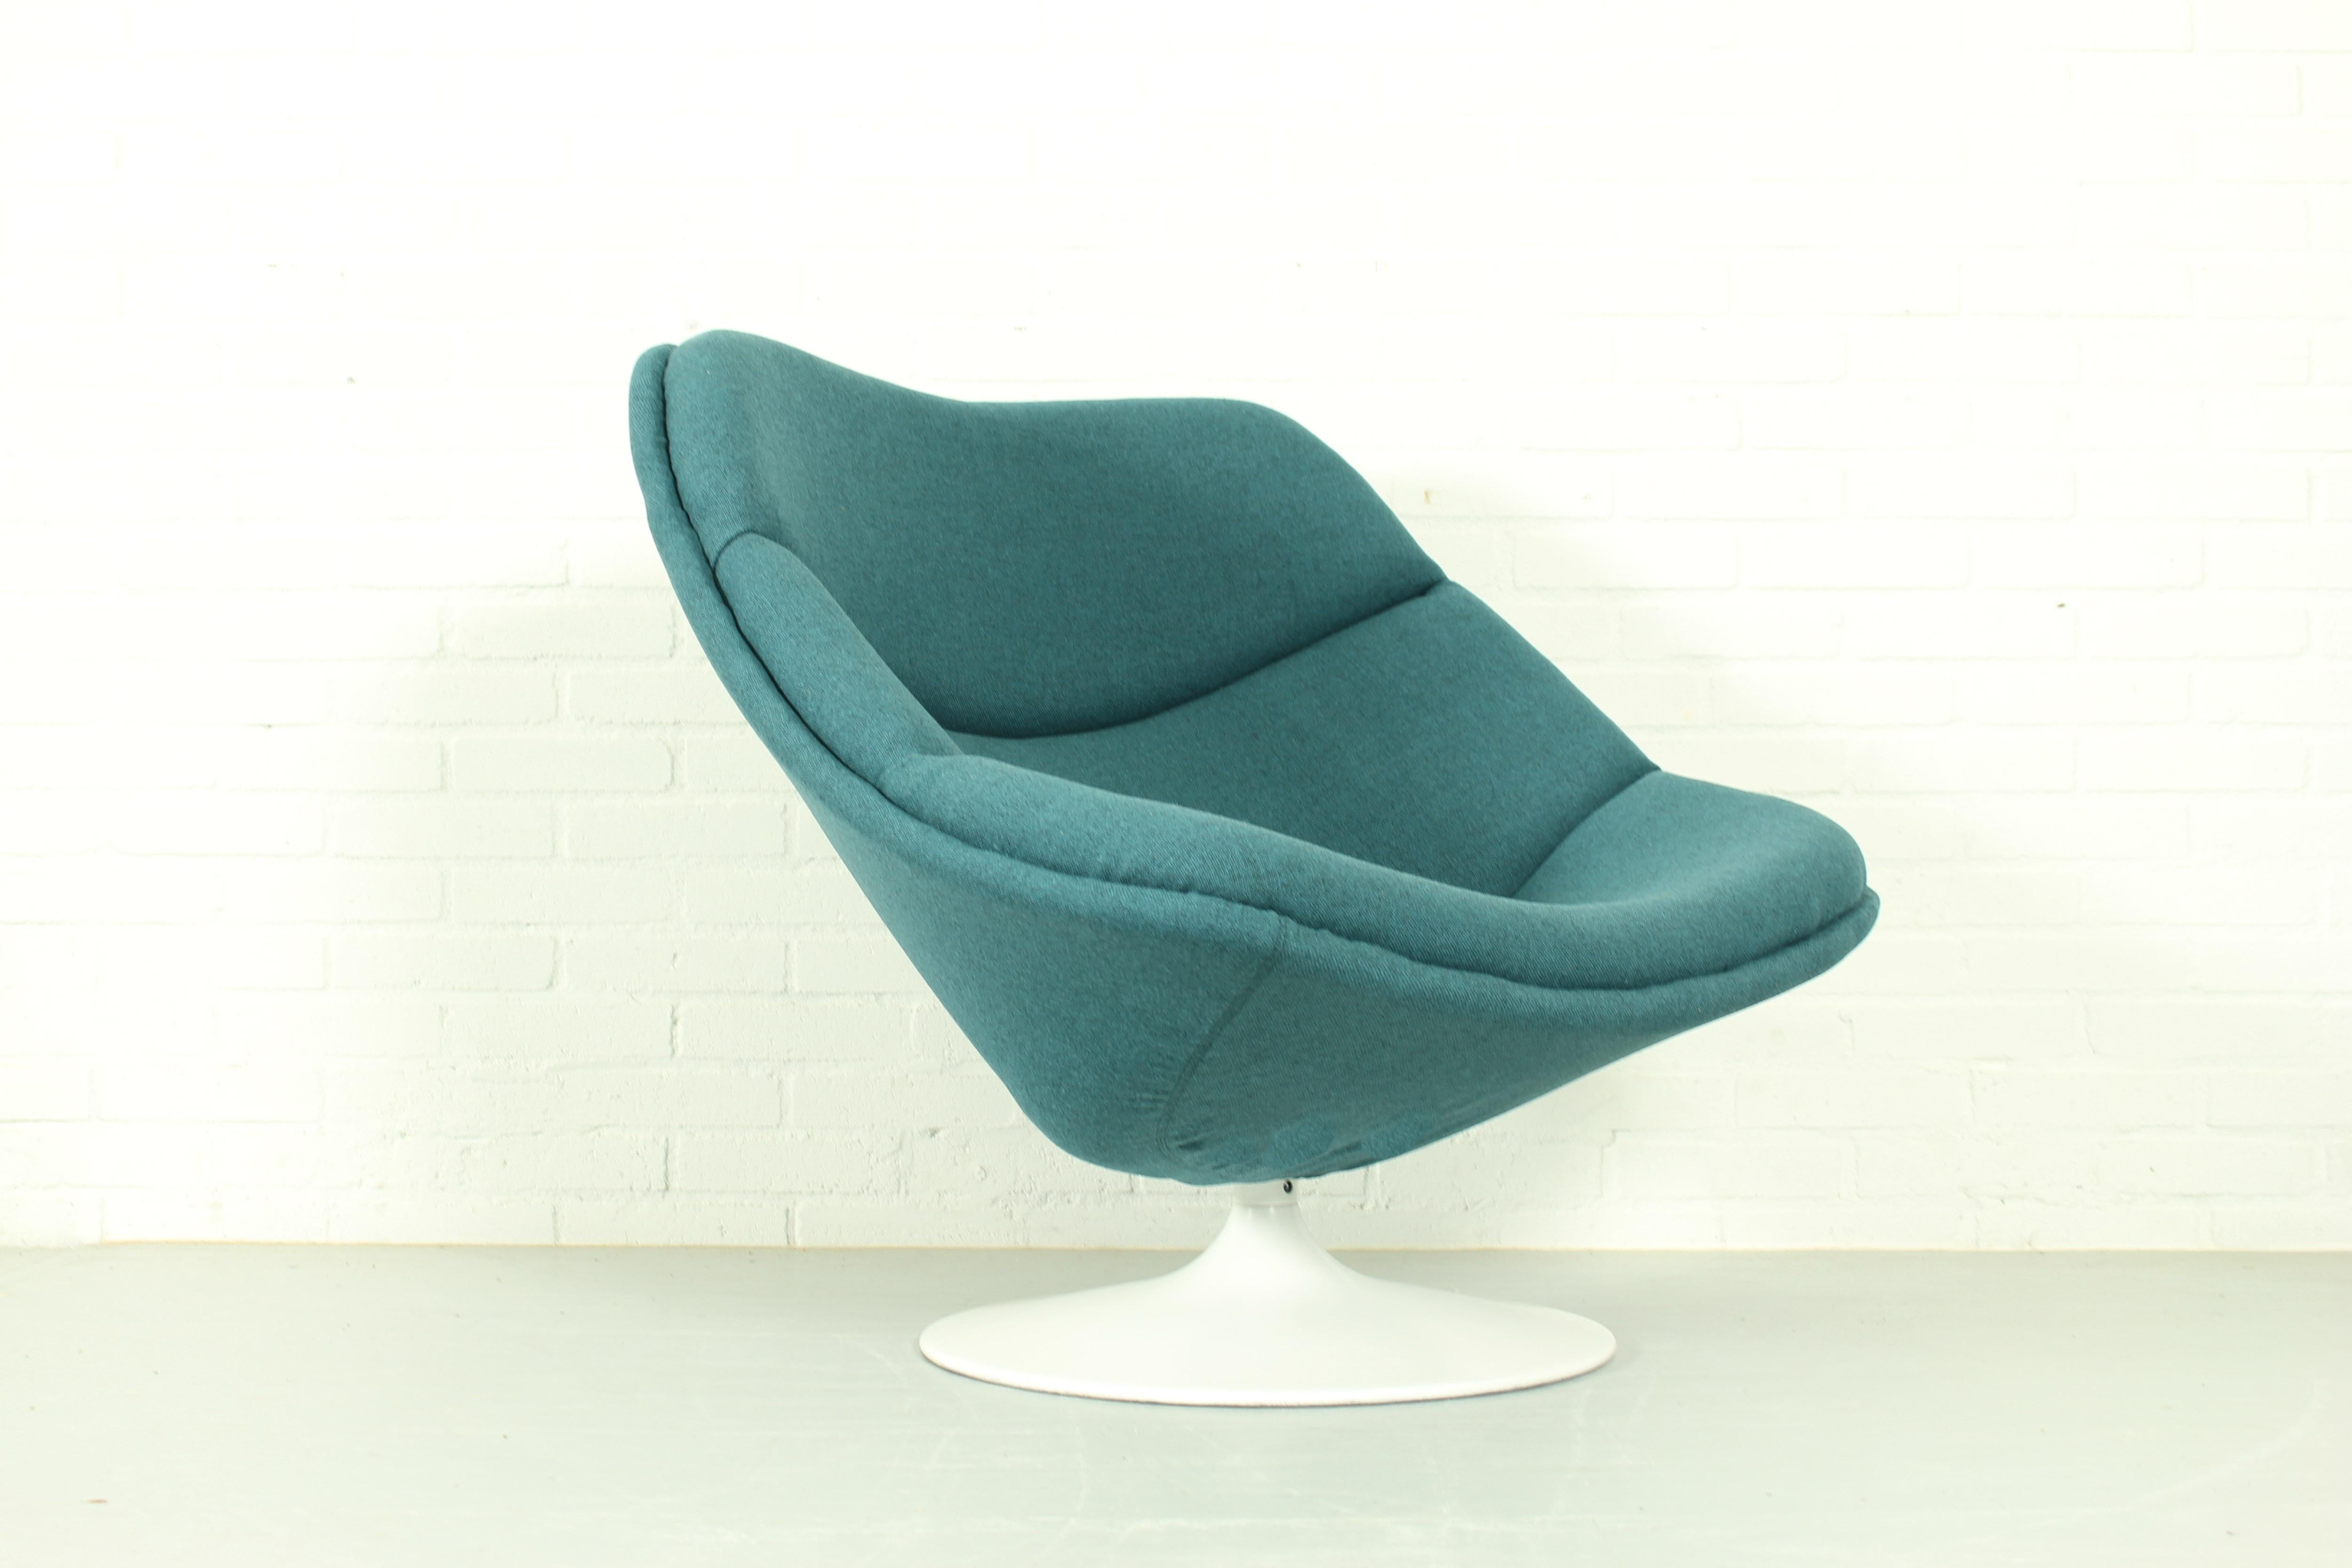 Originaler drehbarer Sessel F557 von Pierre Paulin für Artifort aus den 1960er Jahren. Dieser Stuhl hat ein Stahlgestell und ist mit dem blau-grünen Stoff Tonica von Kvadrat neu bezogen. Dieser Vorläufer des Globe Chair wird nicht mehr hergestellt